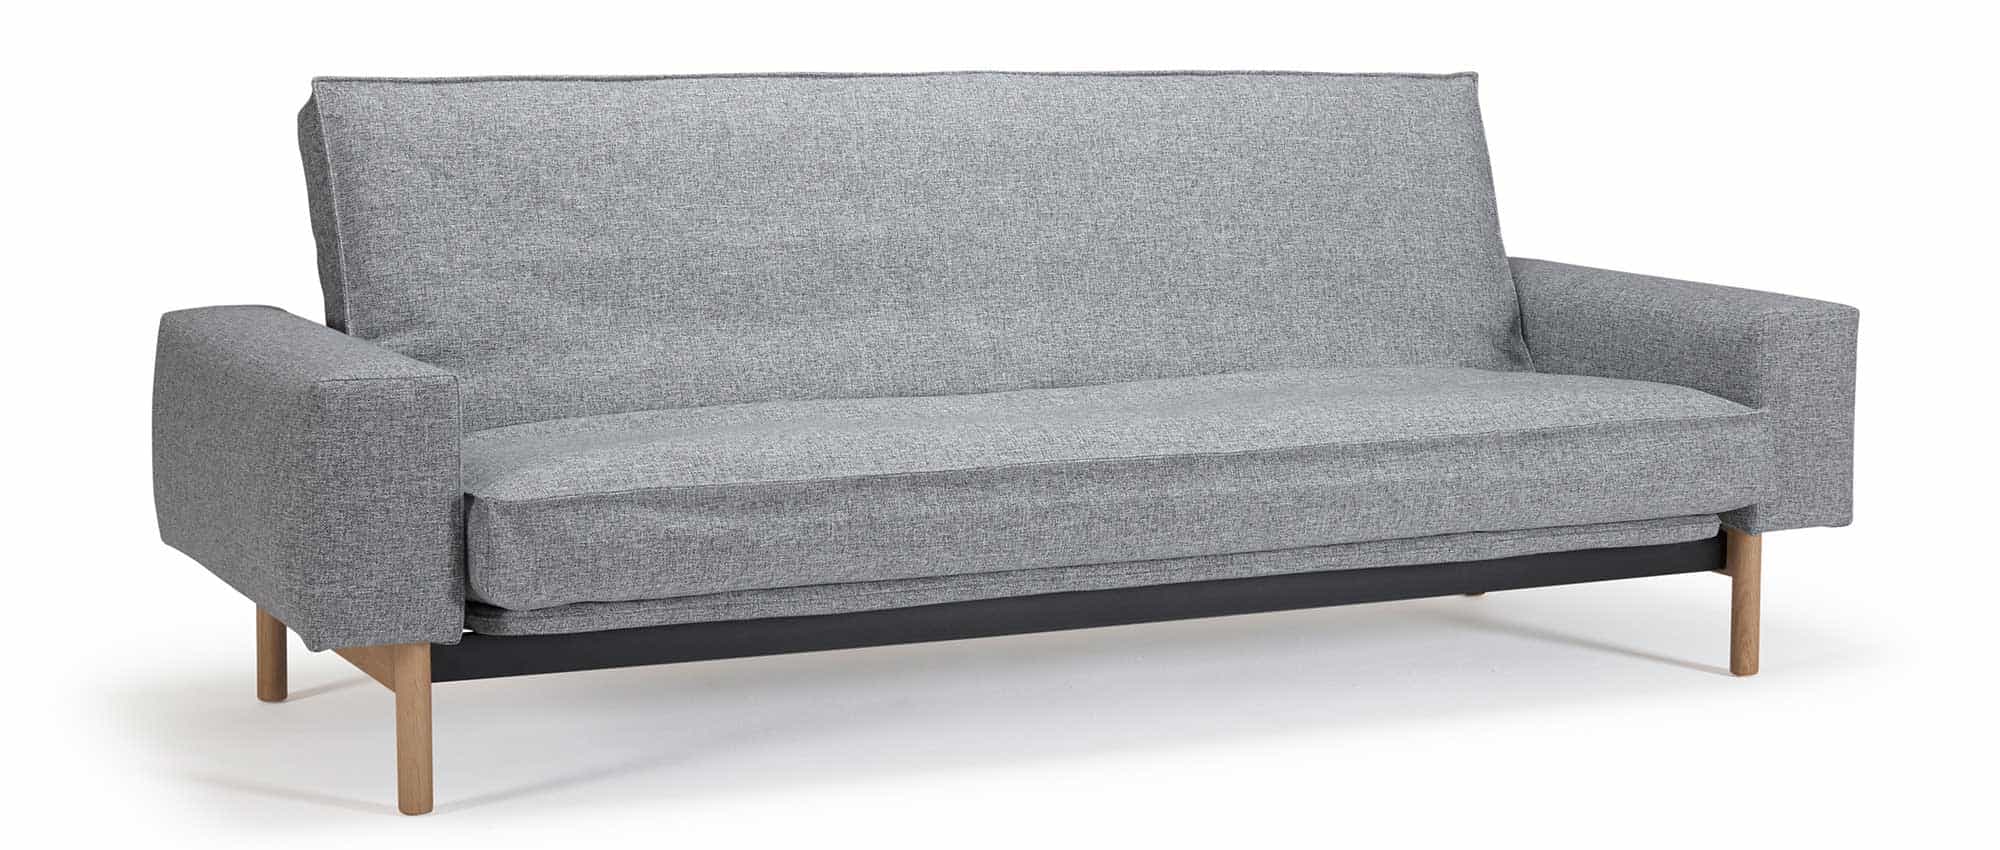 MIMER Schlafsofa von Innovation mit hellen Eichenholzfüßen und breiten Armlehnen, Sofabett für jeden Tag - Liegefläche 140x200cm